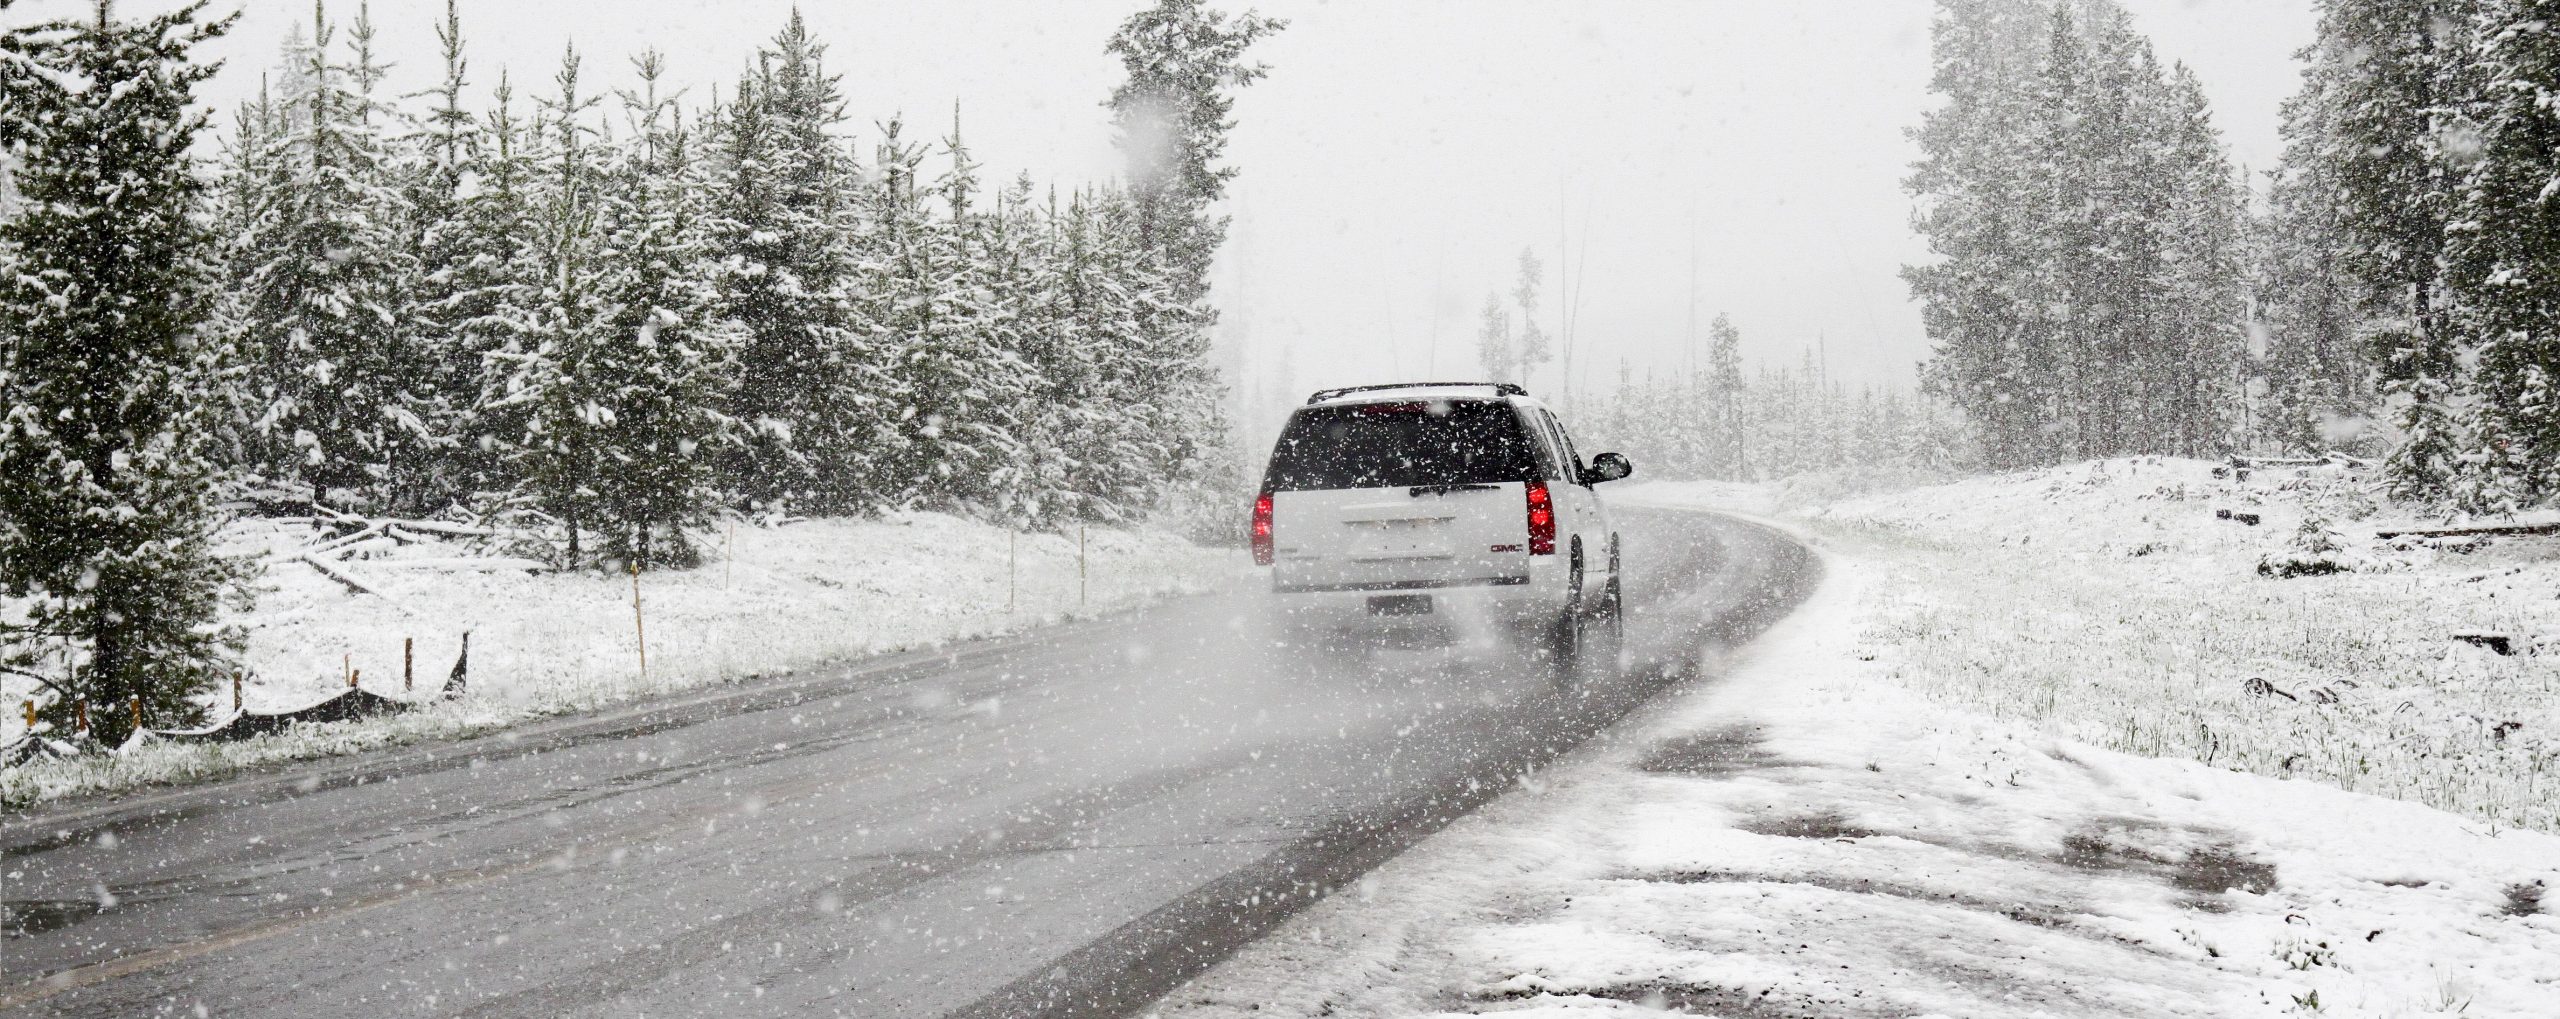 Κακοκαιρία: Δείτε τι πρέπει να έχετε στο αυτοκίνητό σας σε περίπτωση χιονόπτωσης